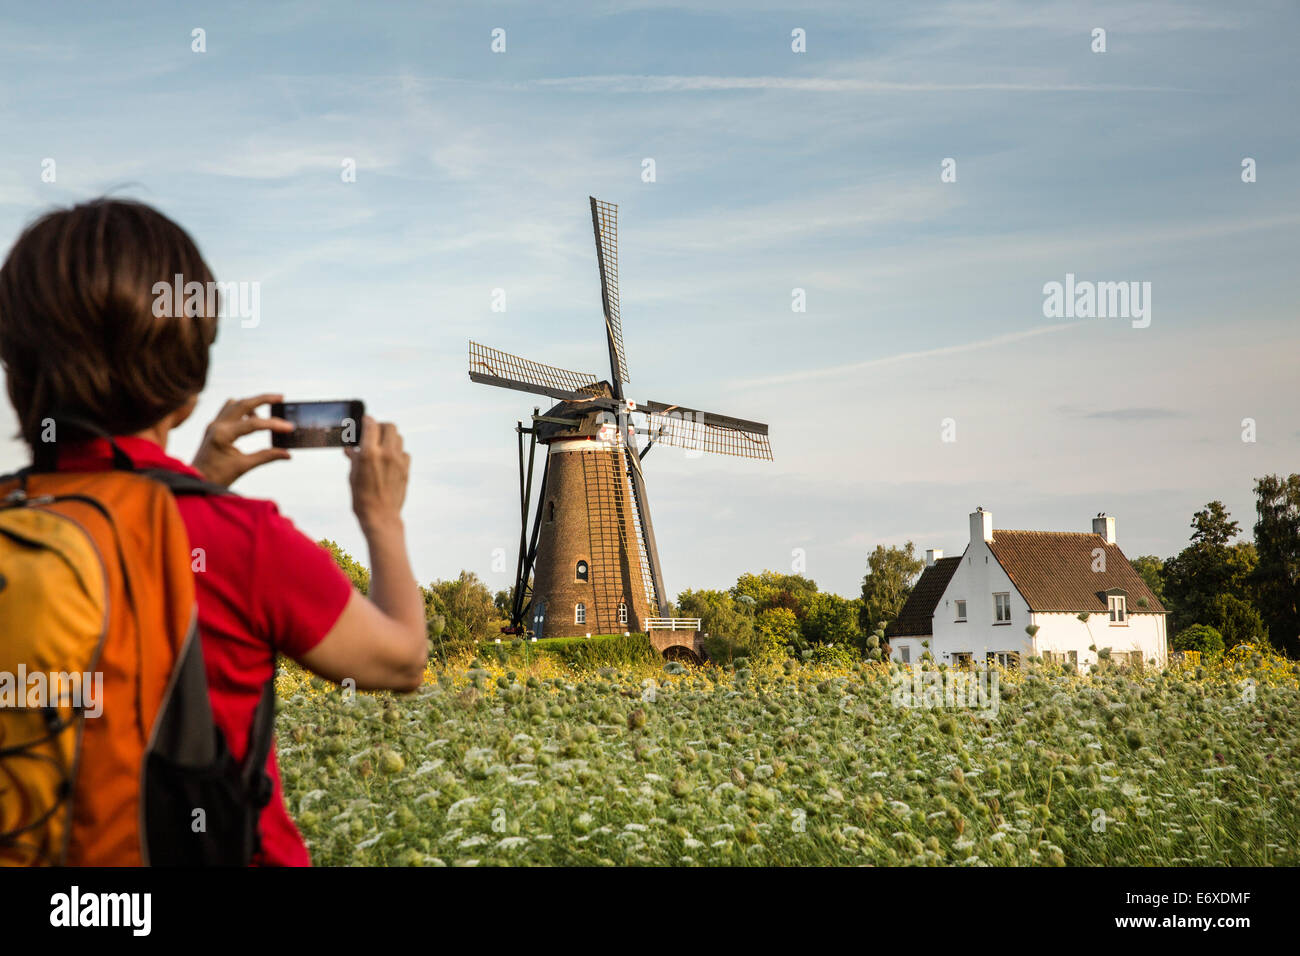 Países Bajos, Nuenen, aldea de Vincent van Gogh. El molino de viento de Roosdonck, que aparece en 7 dibujos. Excursionista tiene imagen Foto de stock